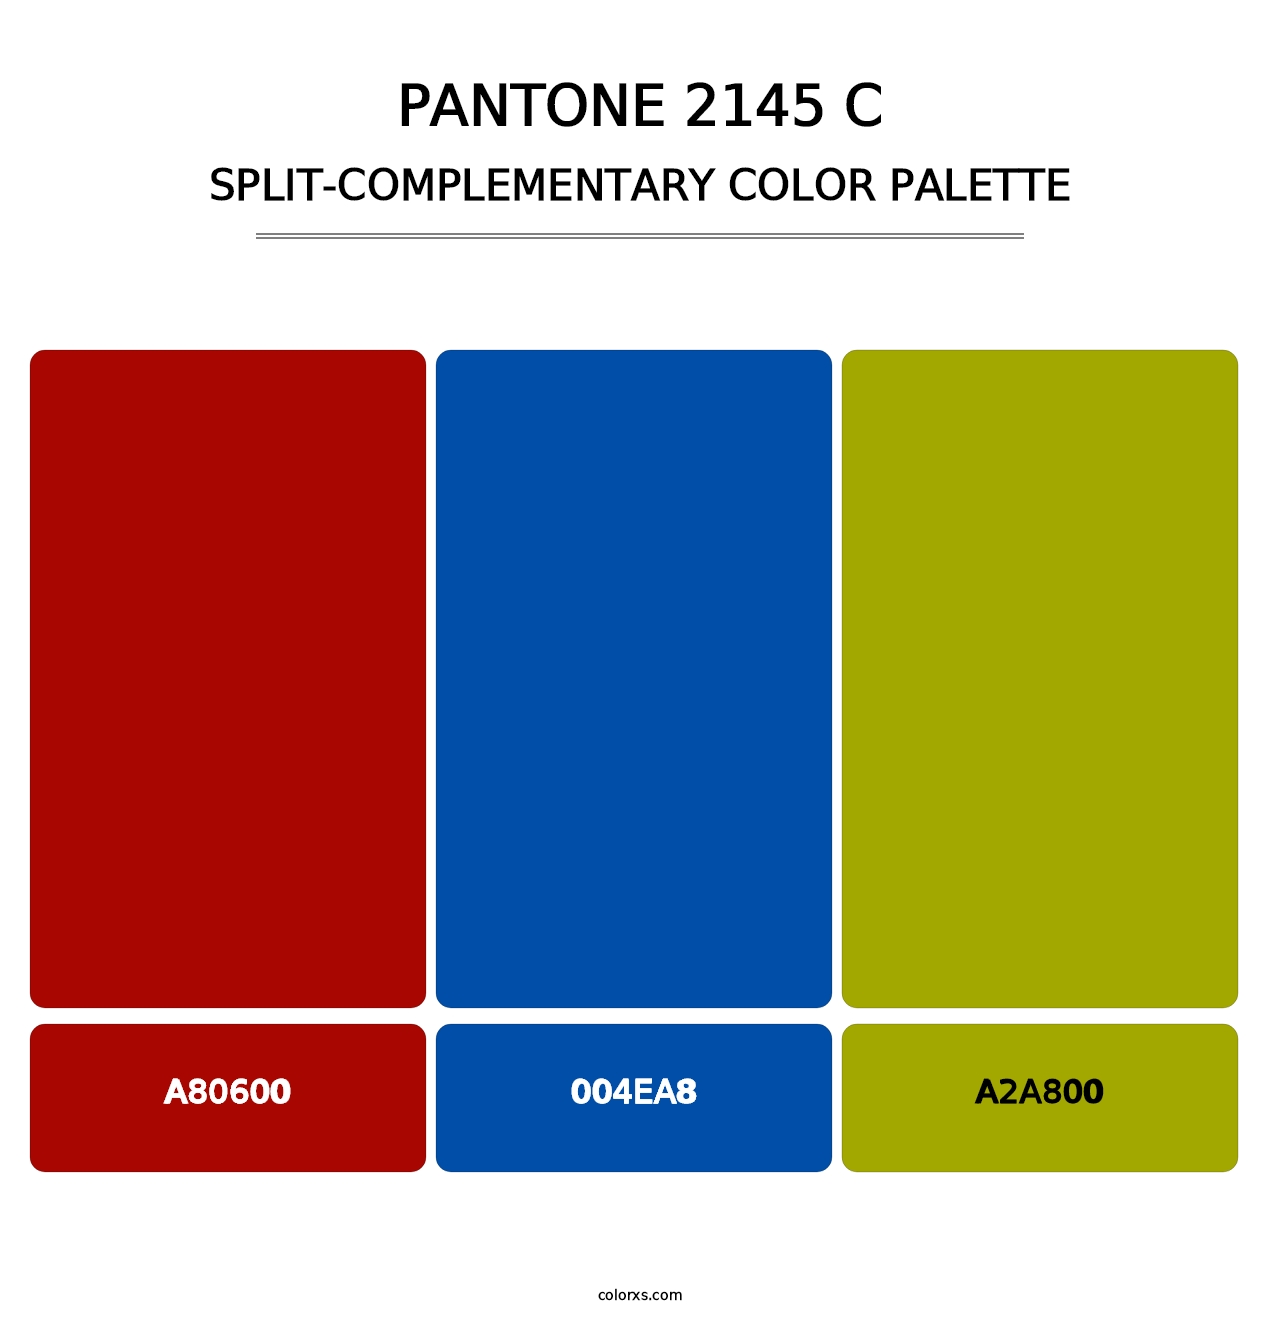 PANTONE 2145 C - Split-Complementary Color Palette